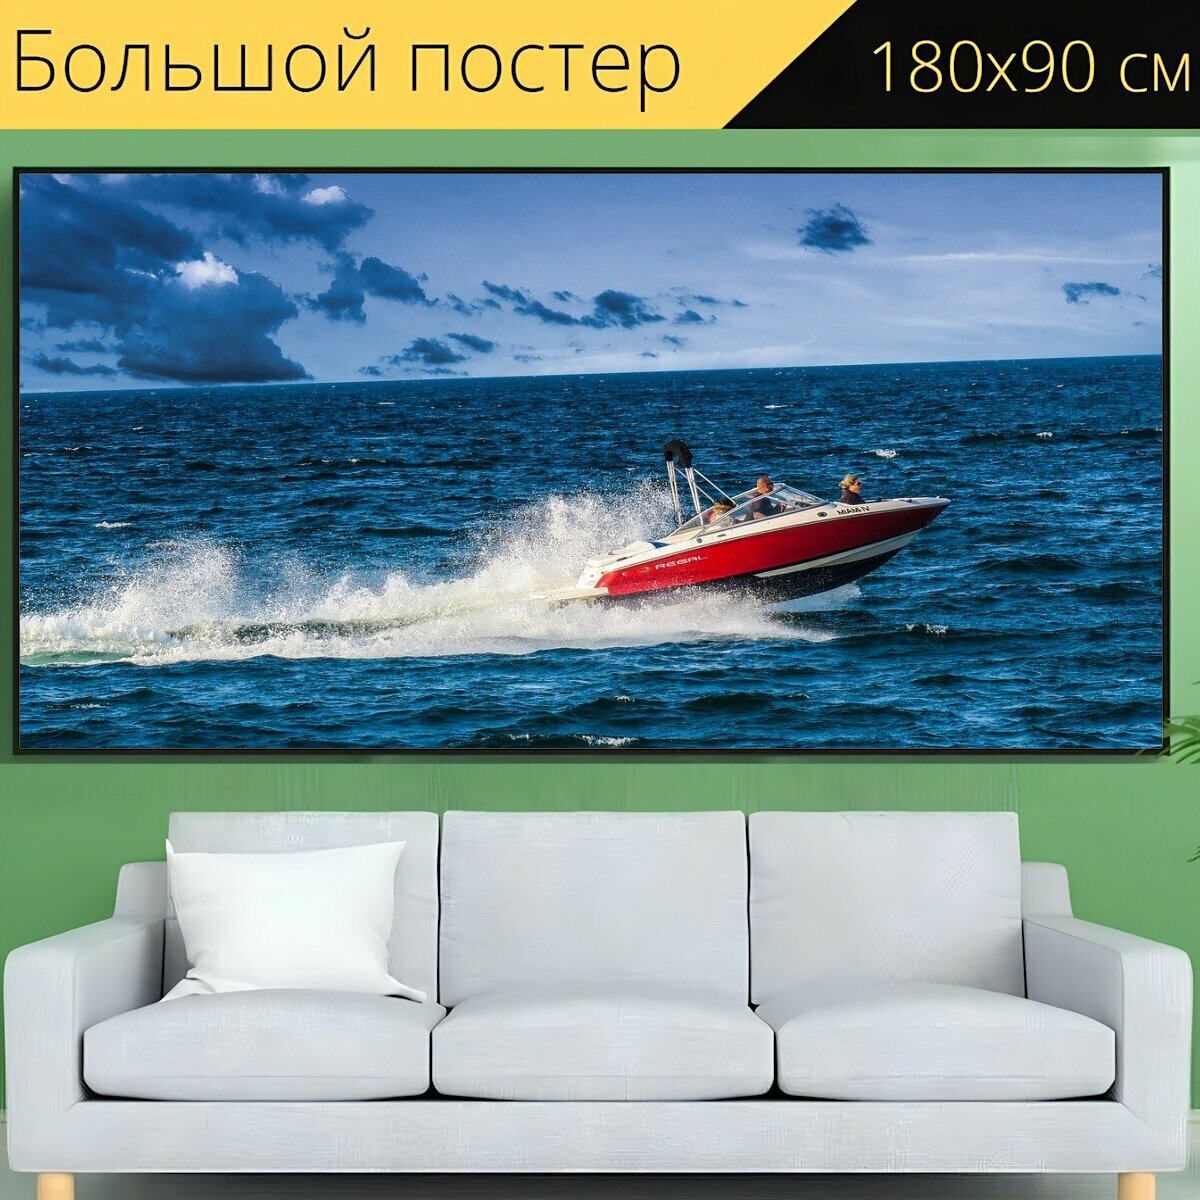 Большой постер "Быстроходный катер, моторная лодка, гоночная лодка" 180 x 90 см. для интерьера